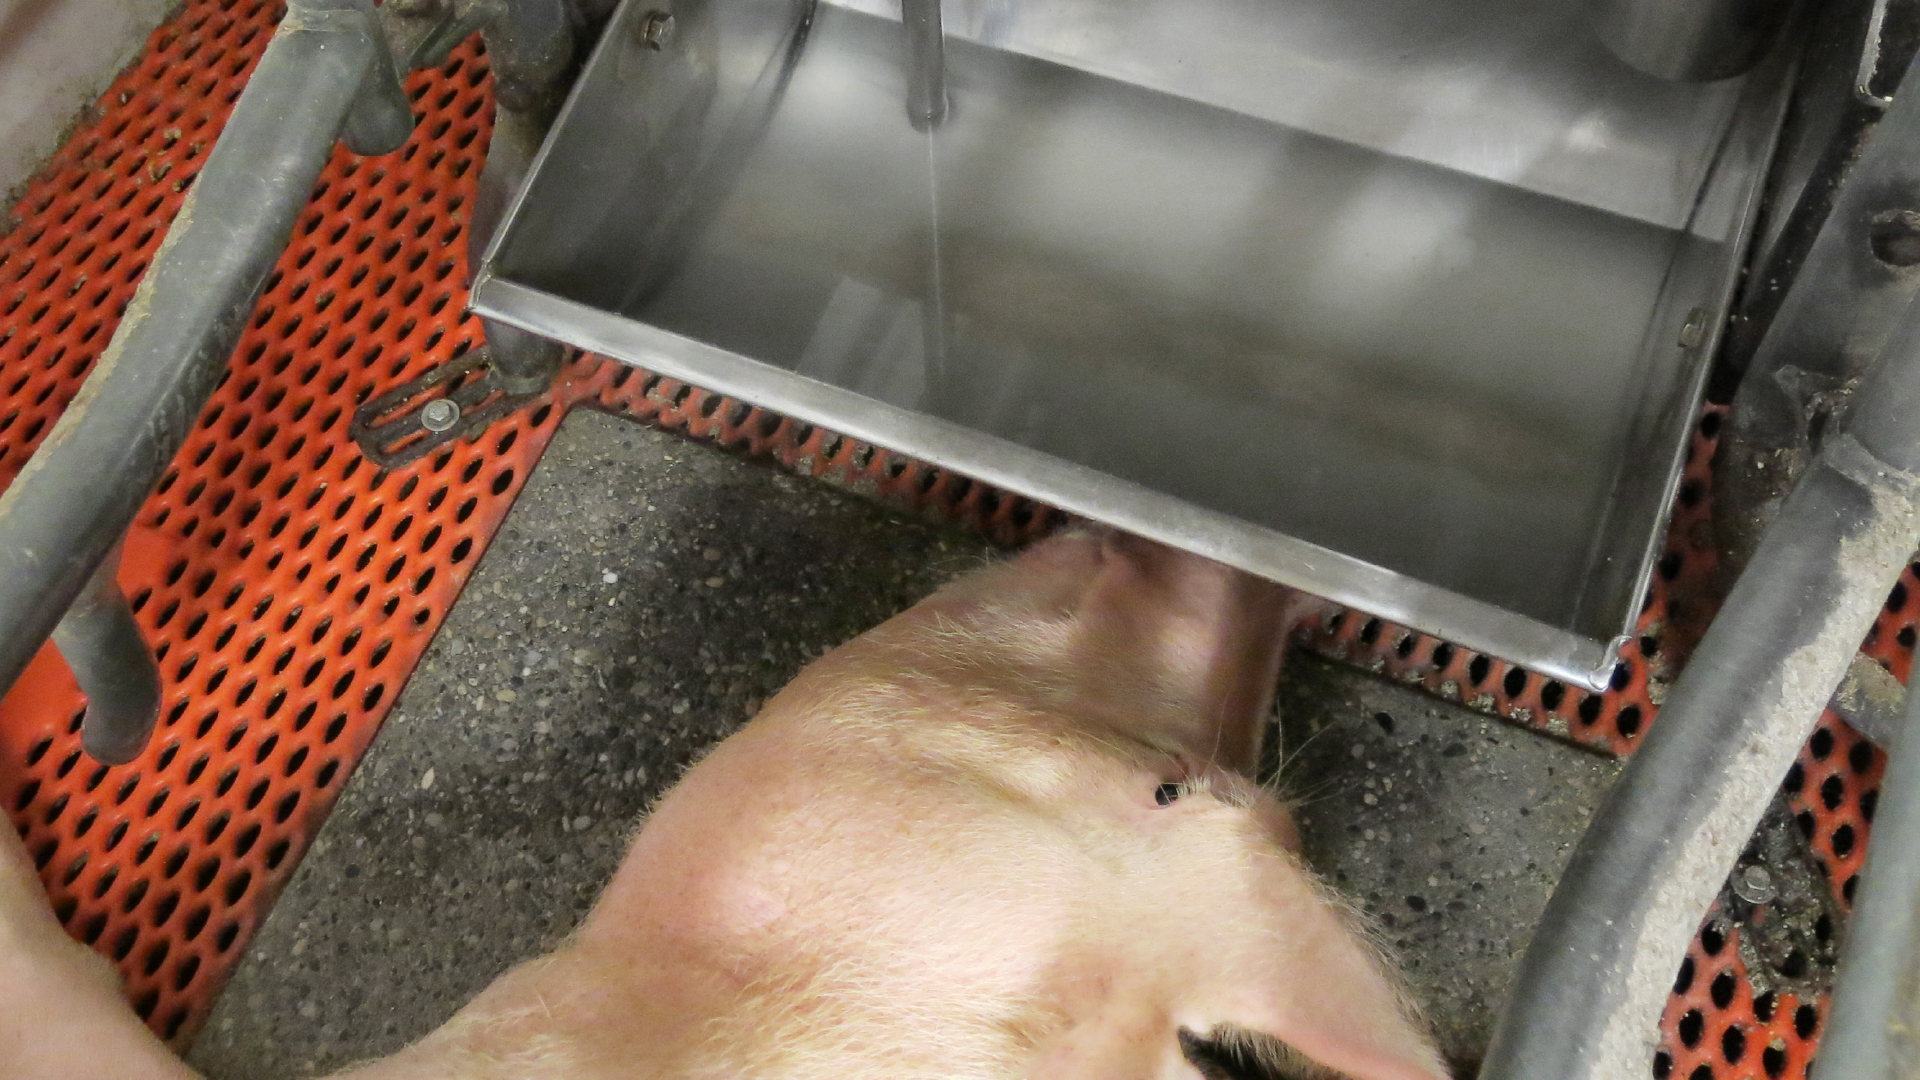 Schweinehaltung und Antibiotikaeinsatz